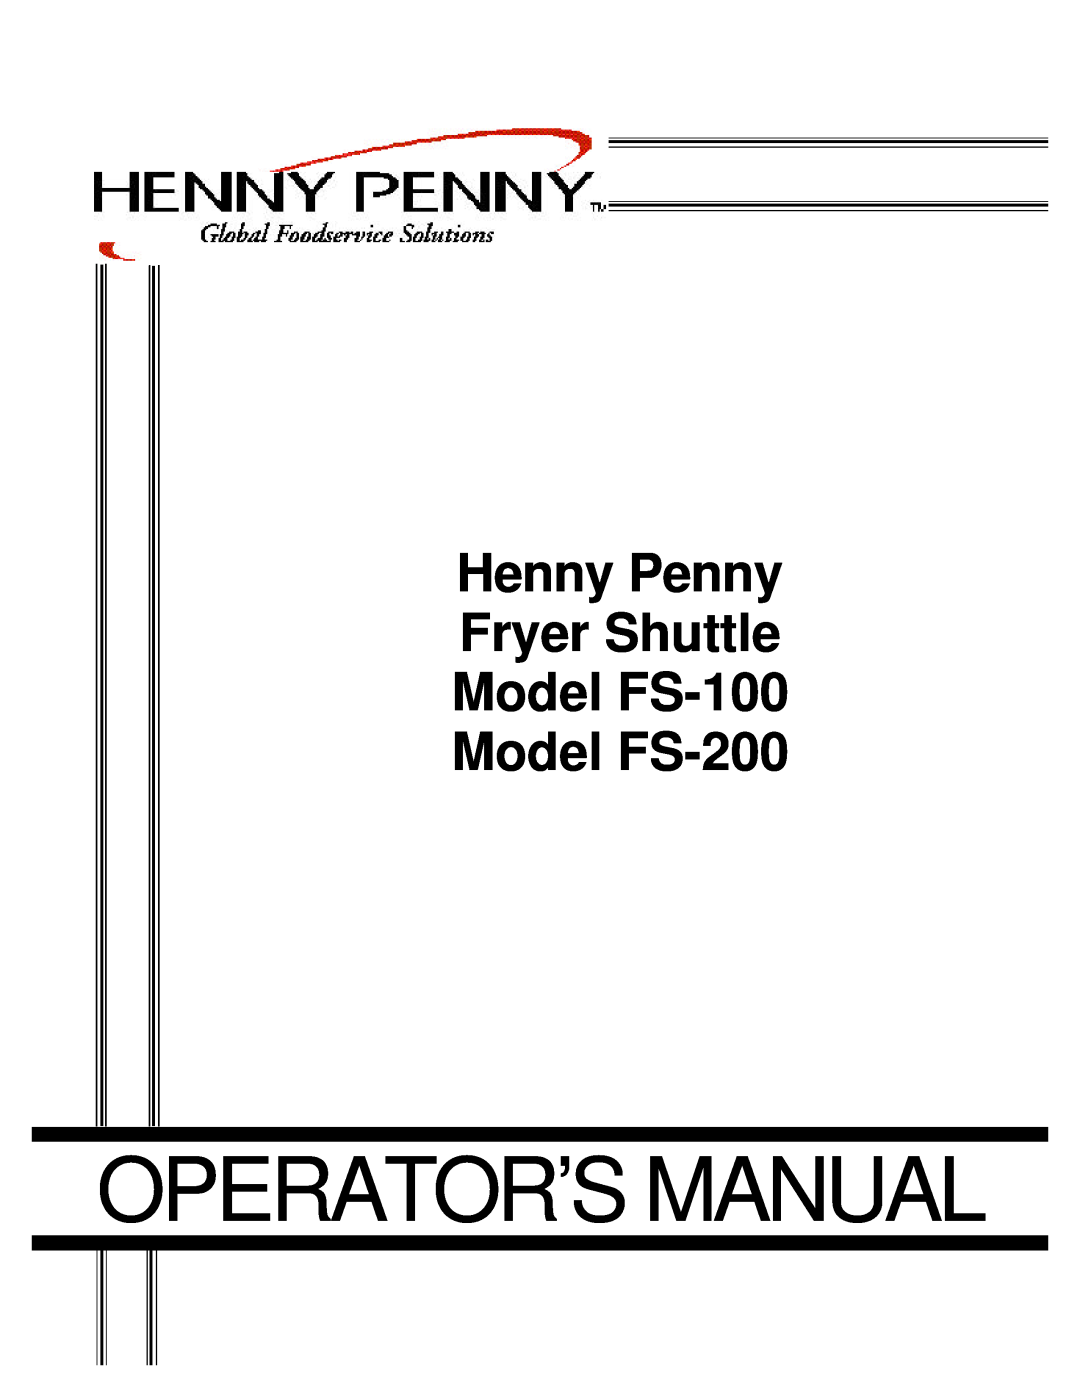 Henny Penny manual Operator’S Manual, Henny Penny Fryer Shuttle Model FS-100, Model FS-200 